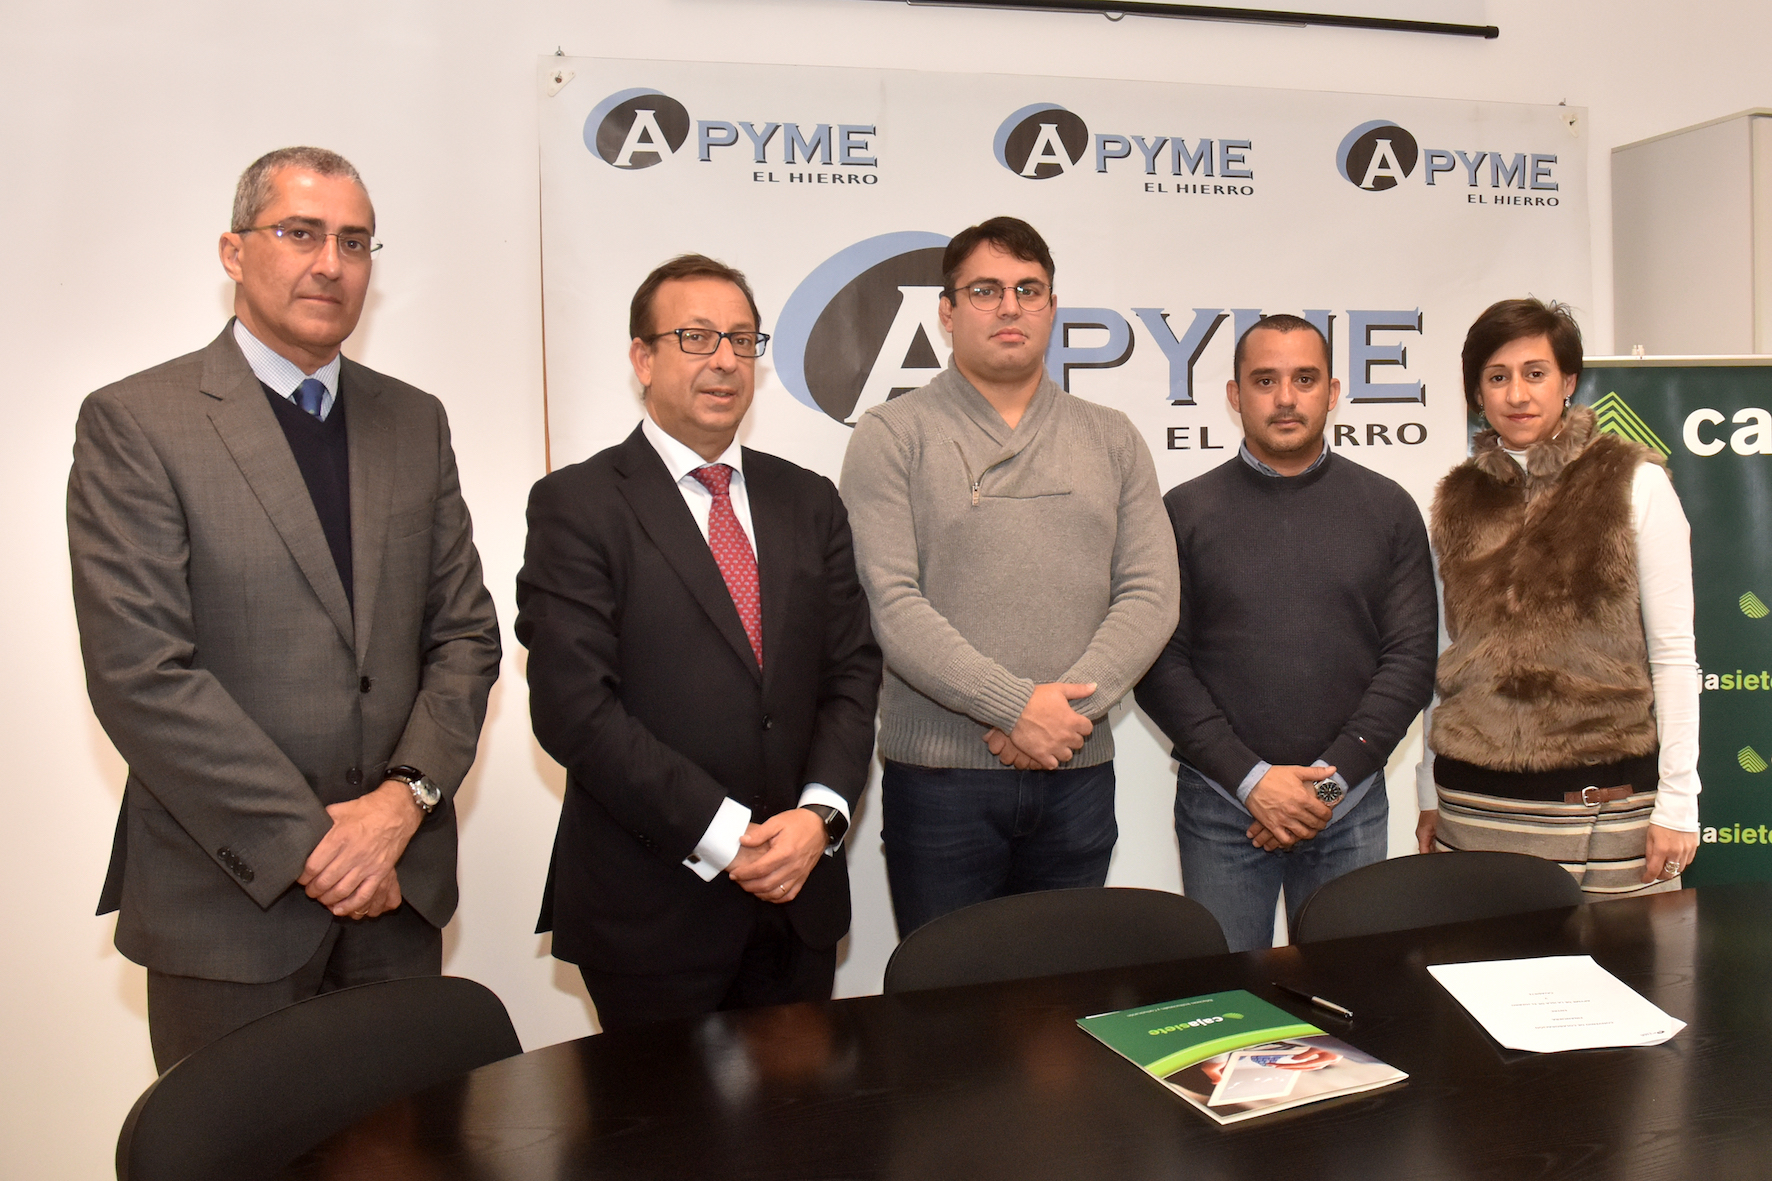 CajaSiete y APYME El Hierro firman un convenio de colaboración